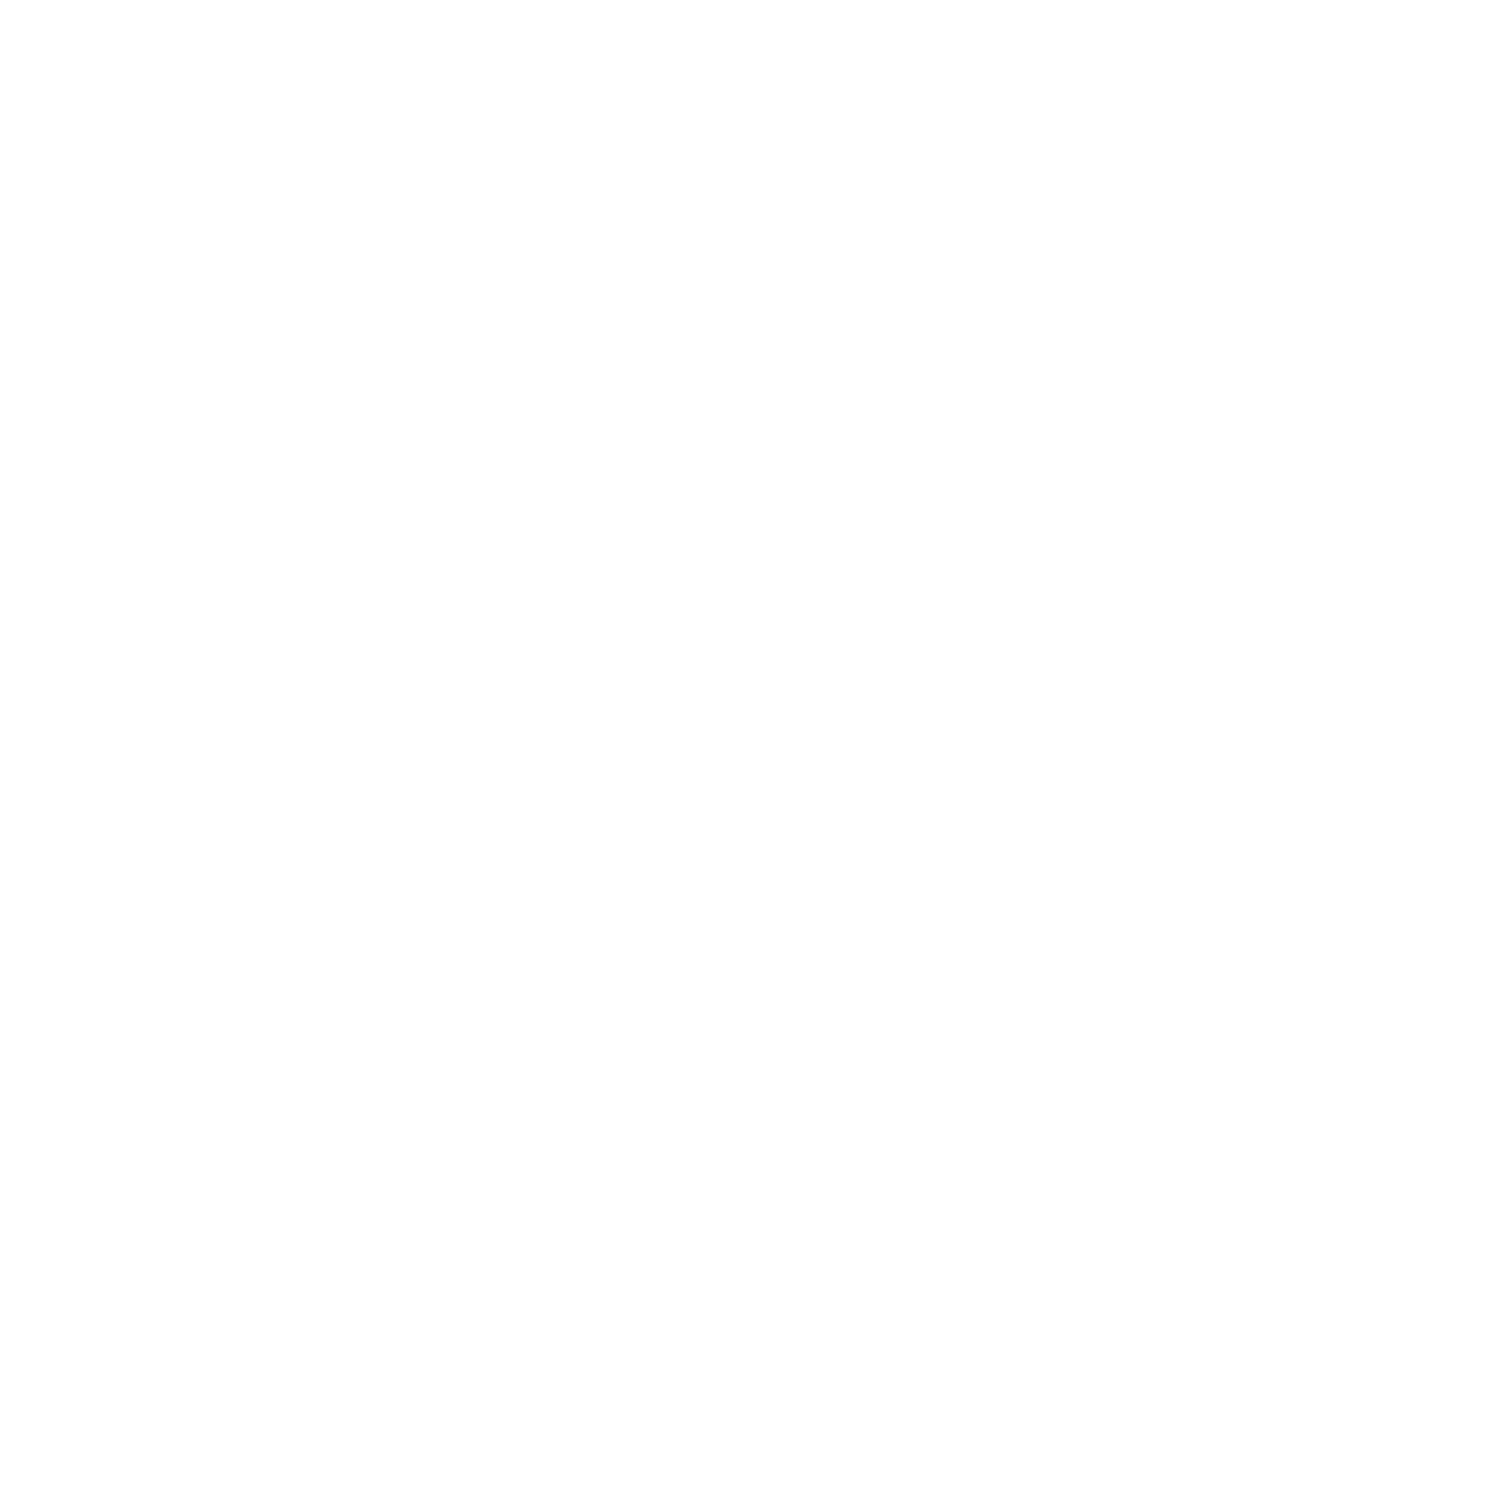 Art House Social